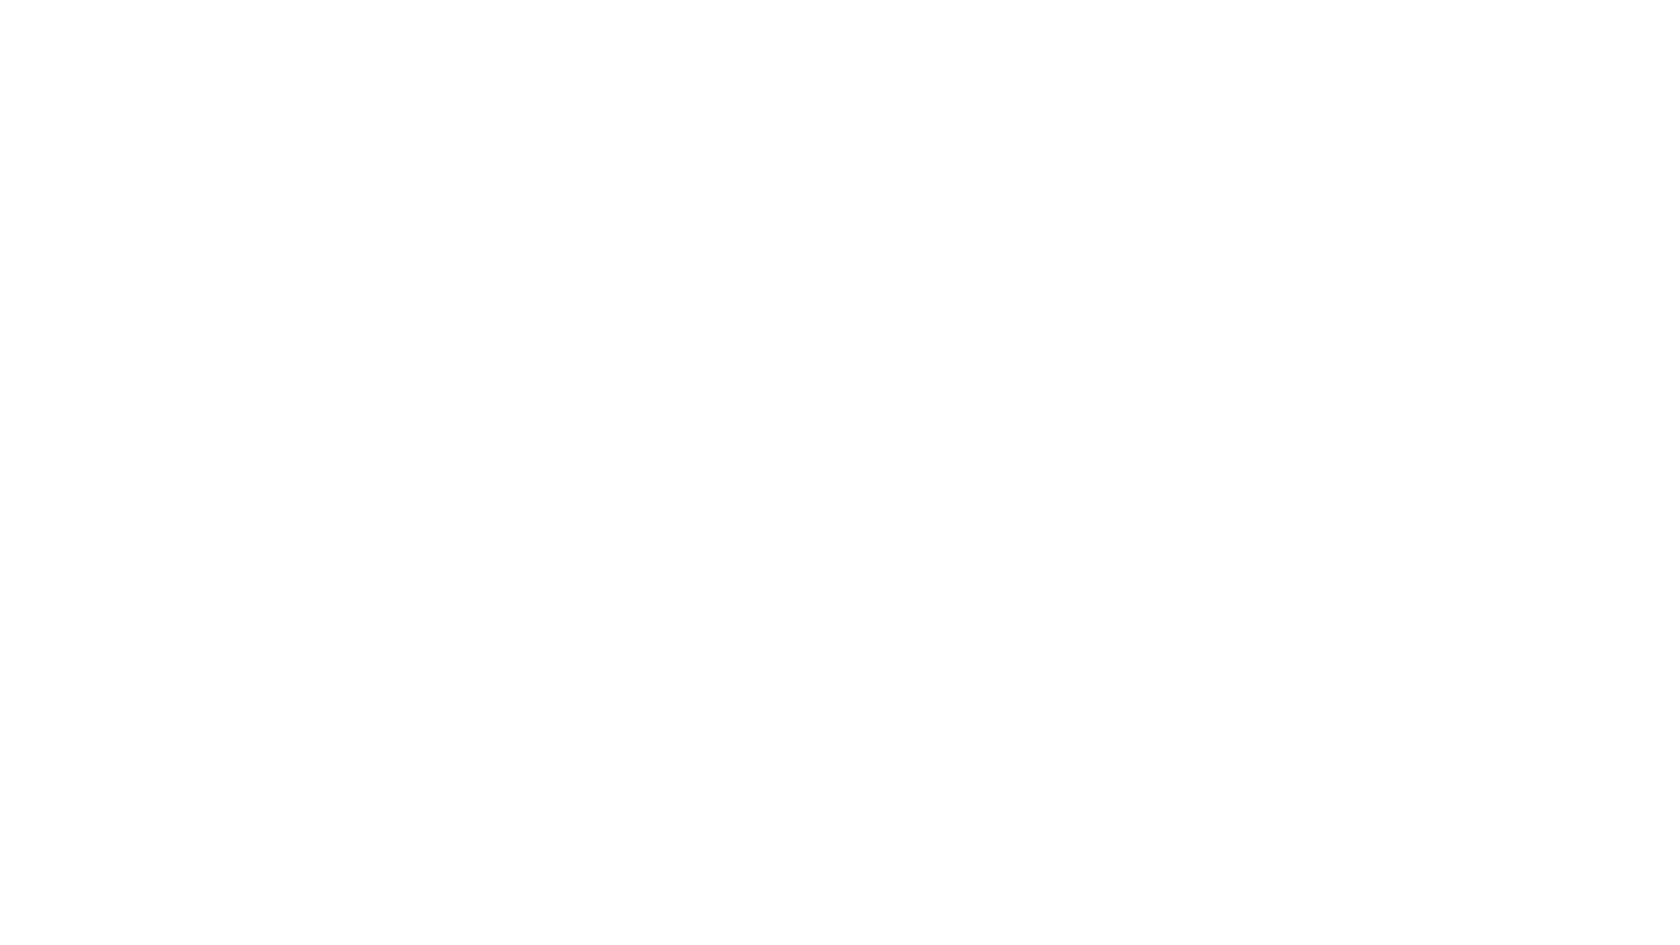 Конфеты NUA. Дизайн логотипа и упаковки конфет Nua. Брендинговое агентство Force Gear.